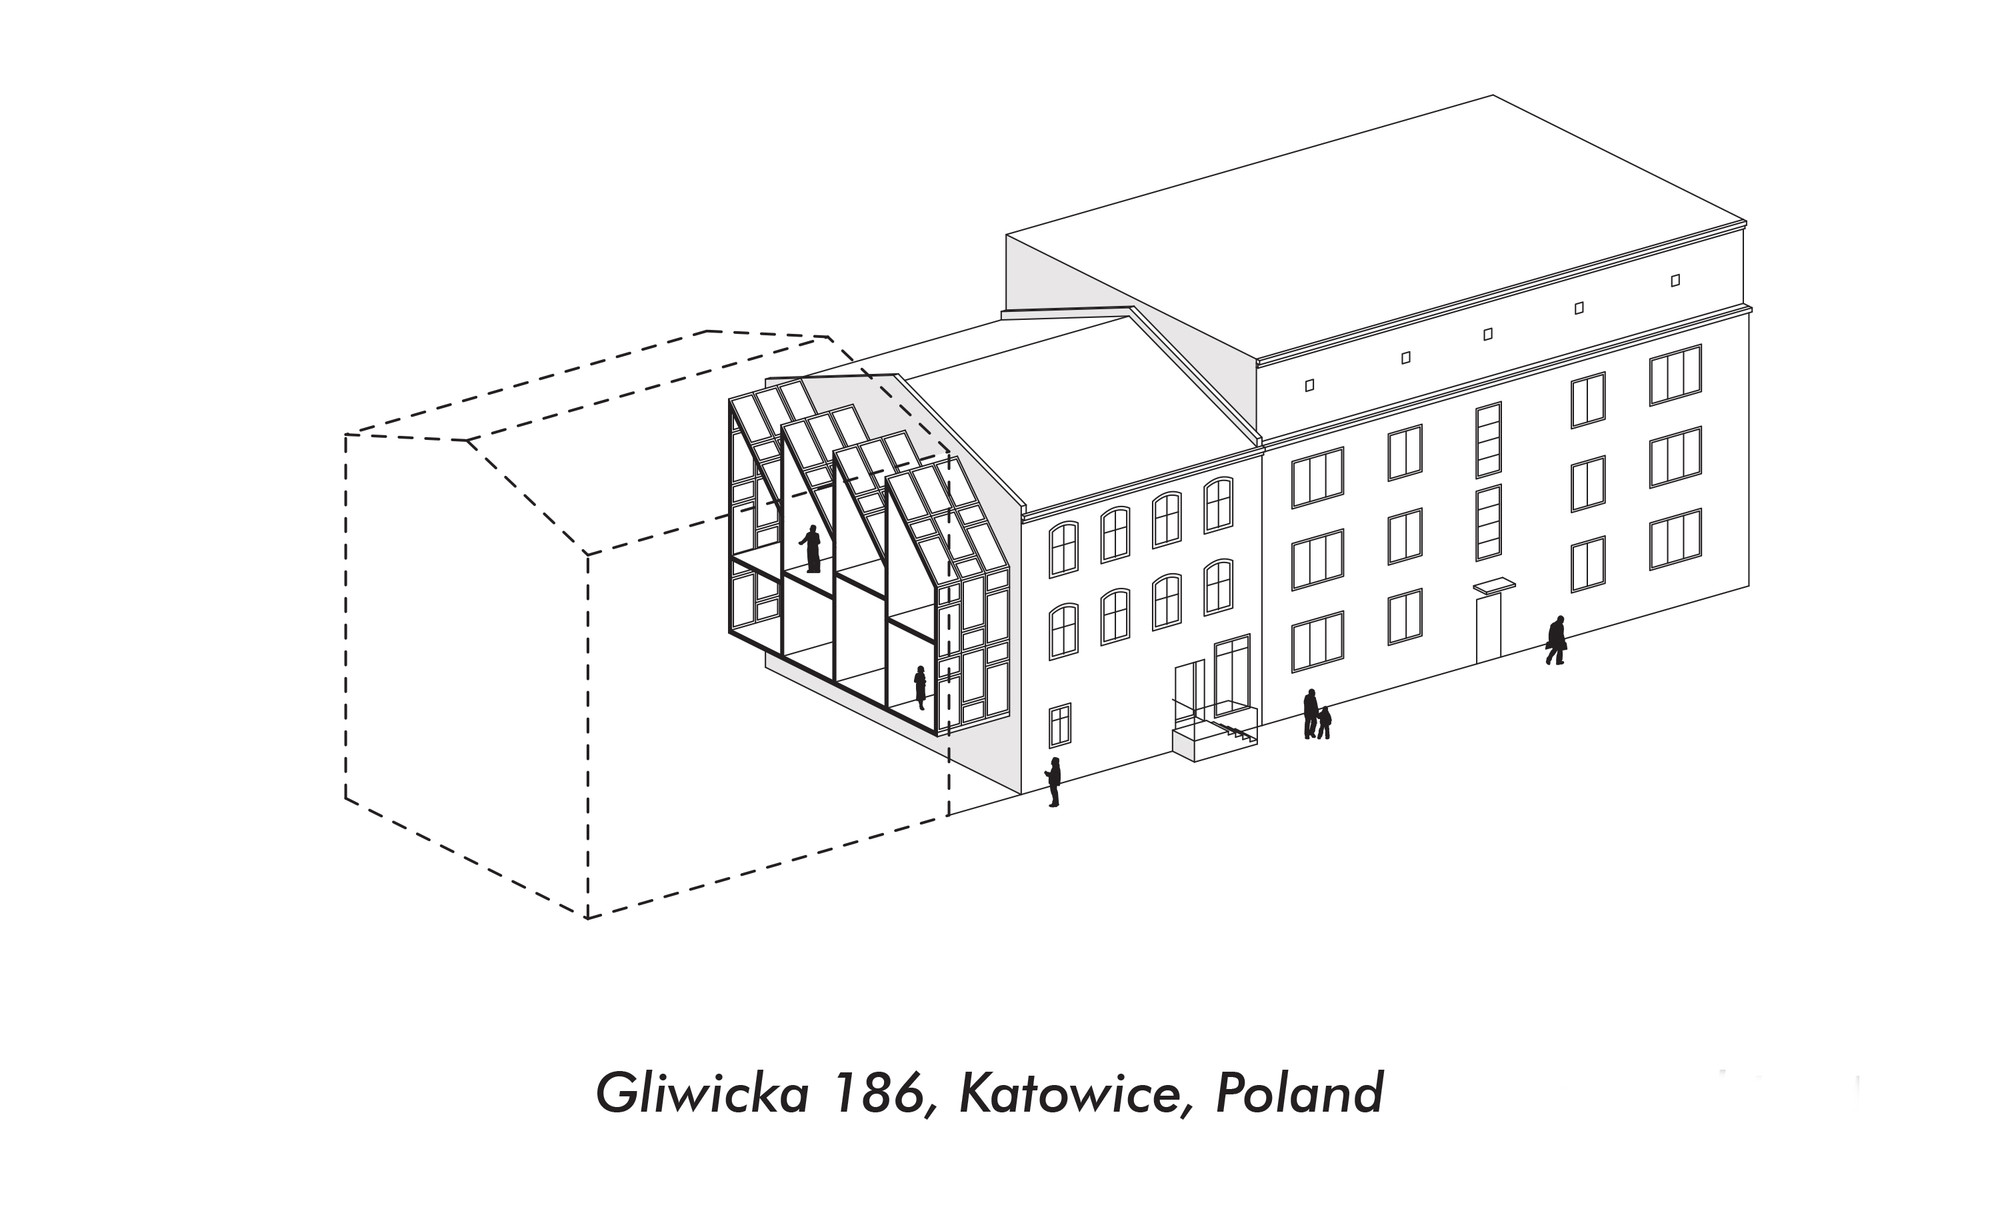 Live Between Buildings - Katowice